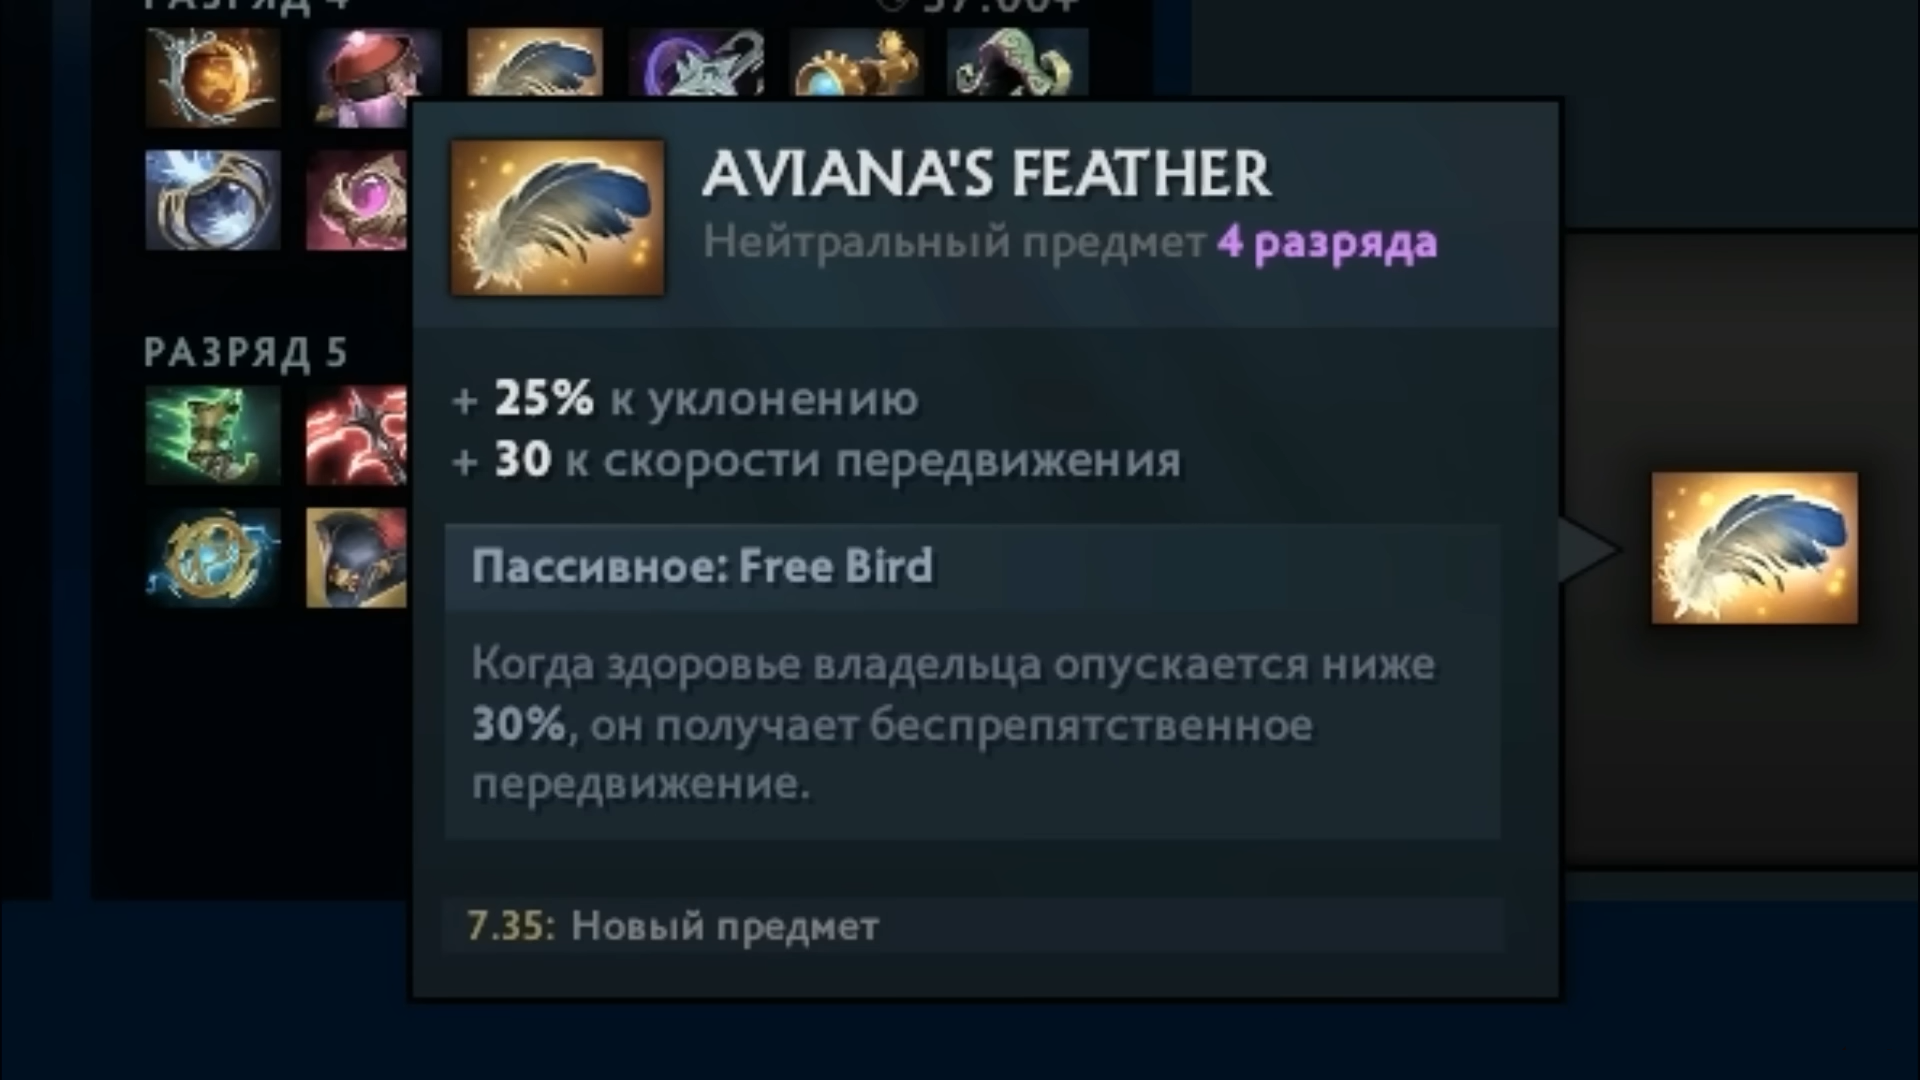 Aviana's Feather